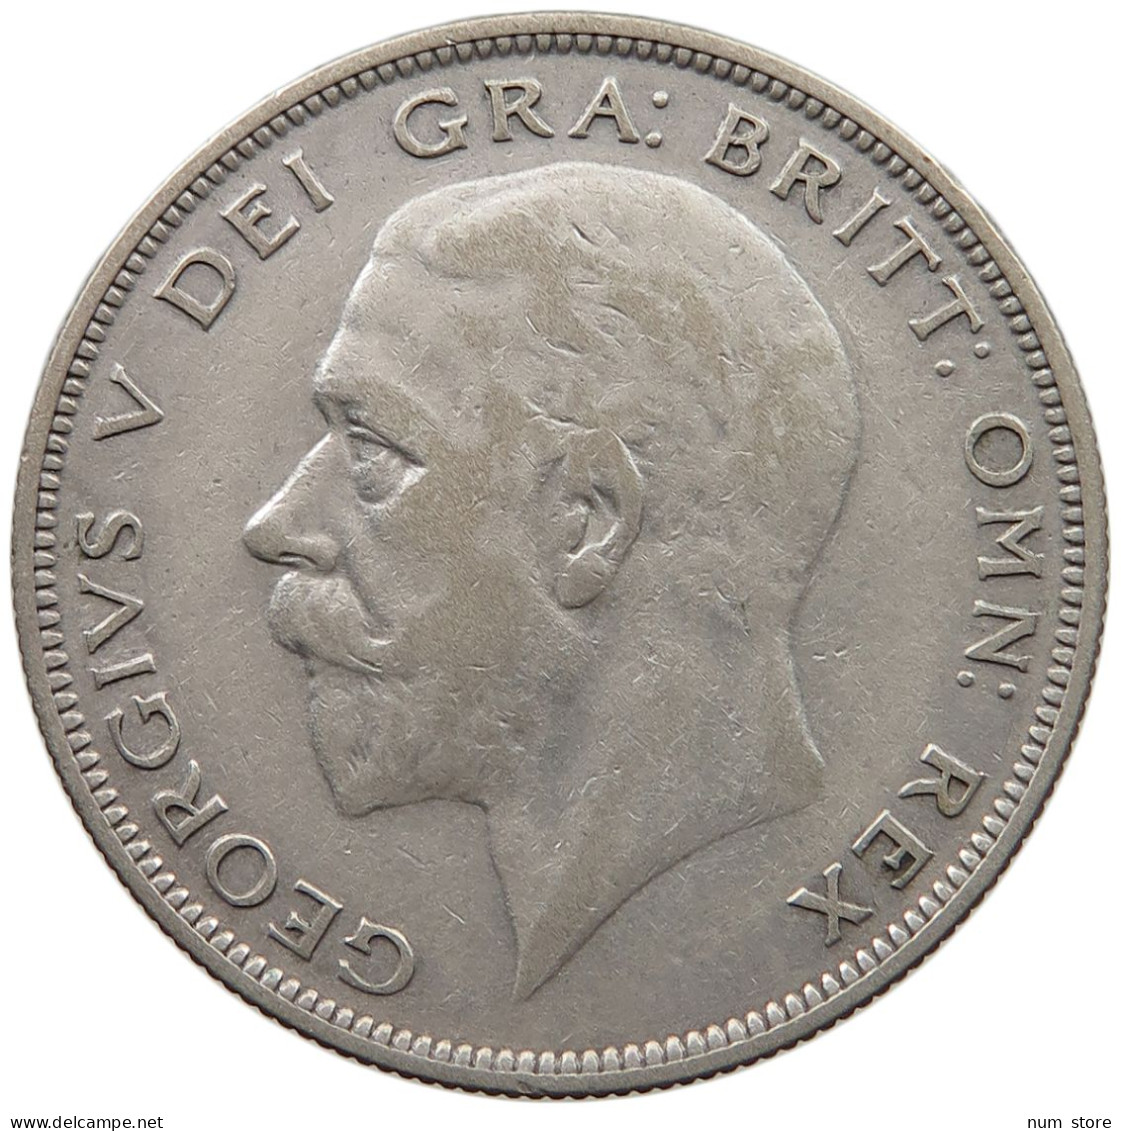 GREAT BRITAIN HALF CROWN 1929 George V. (1910-1936) #c001 0307 - K. 1/2 Crown